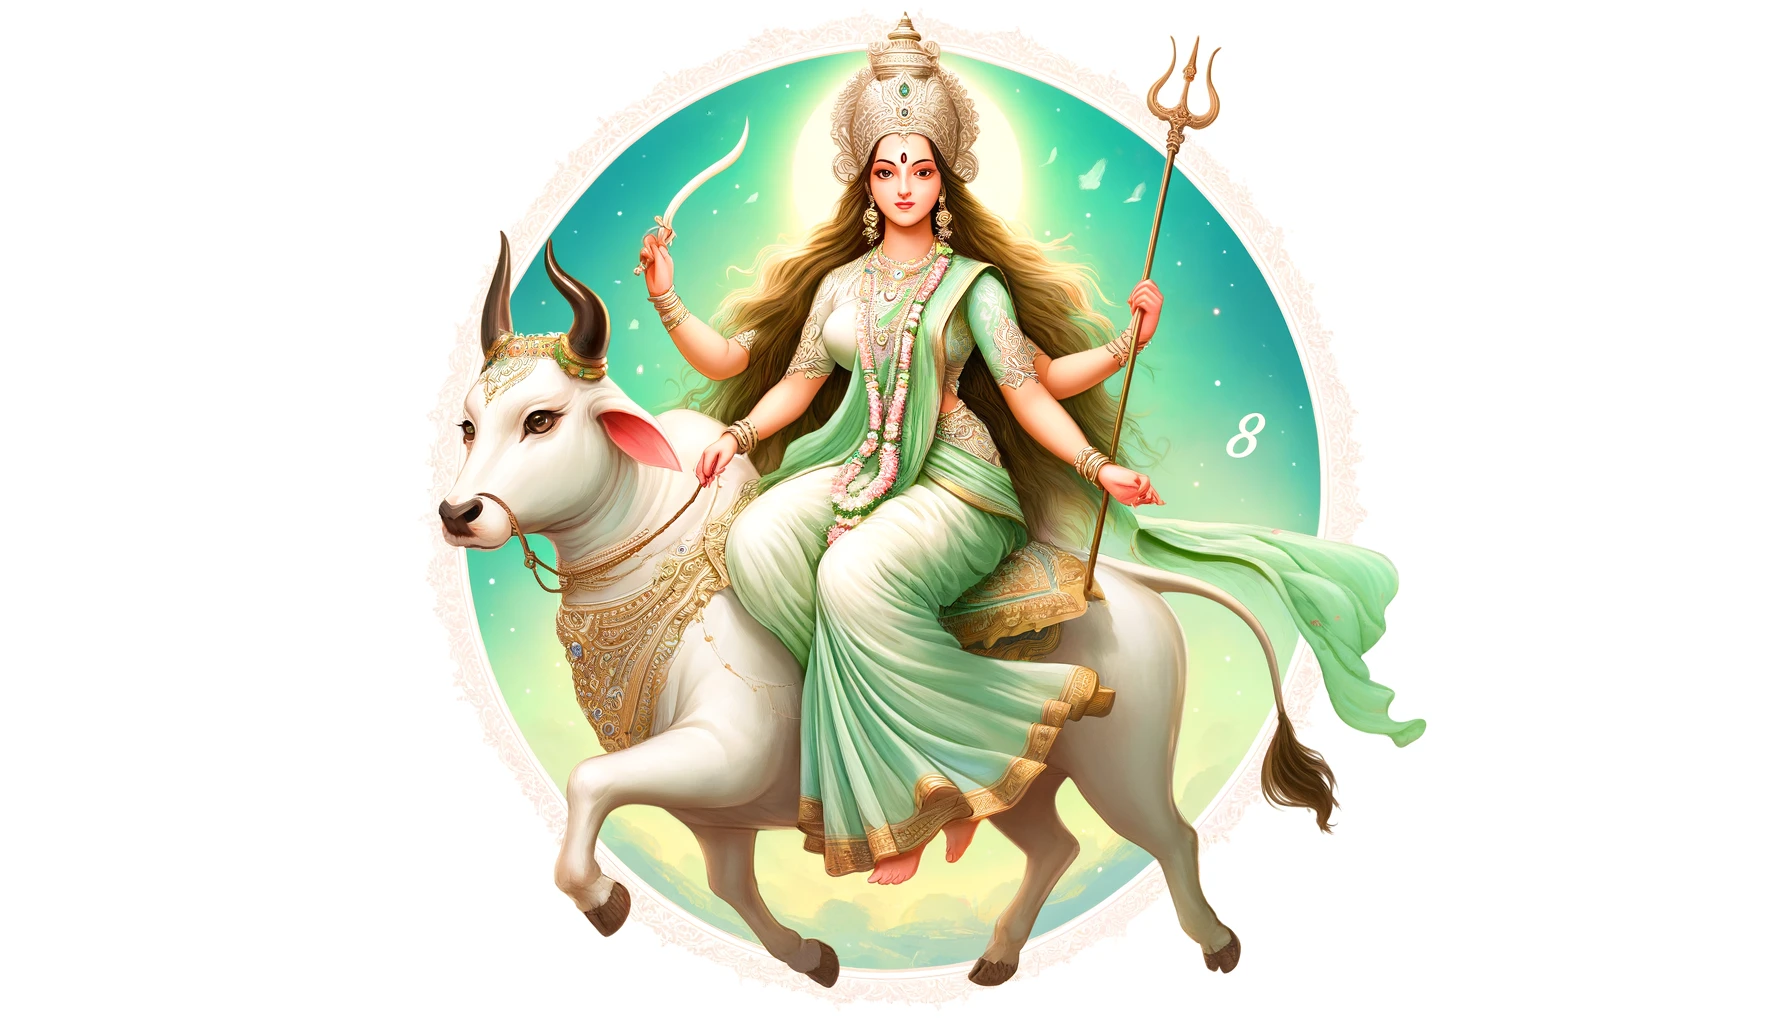 Uma ilustração serena e bela da Deusa Mahagauri, a oitava forma da Deusa Durga adorada no oitavo dia de Navratri. A imagem deve